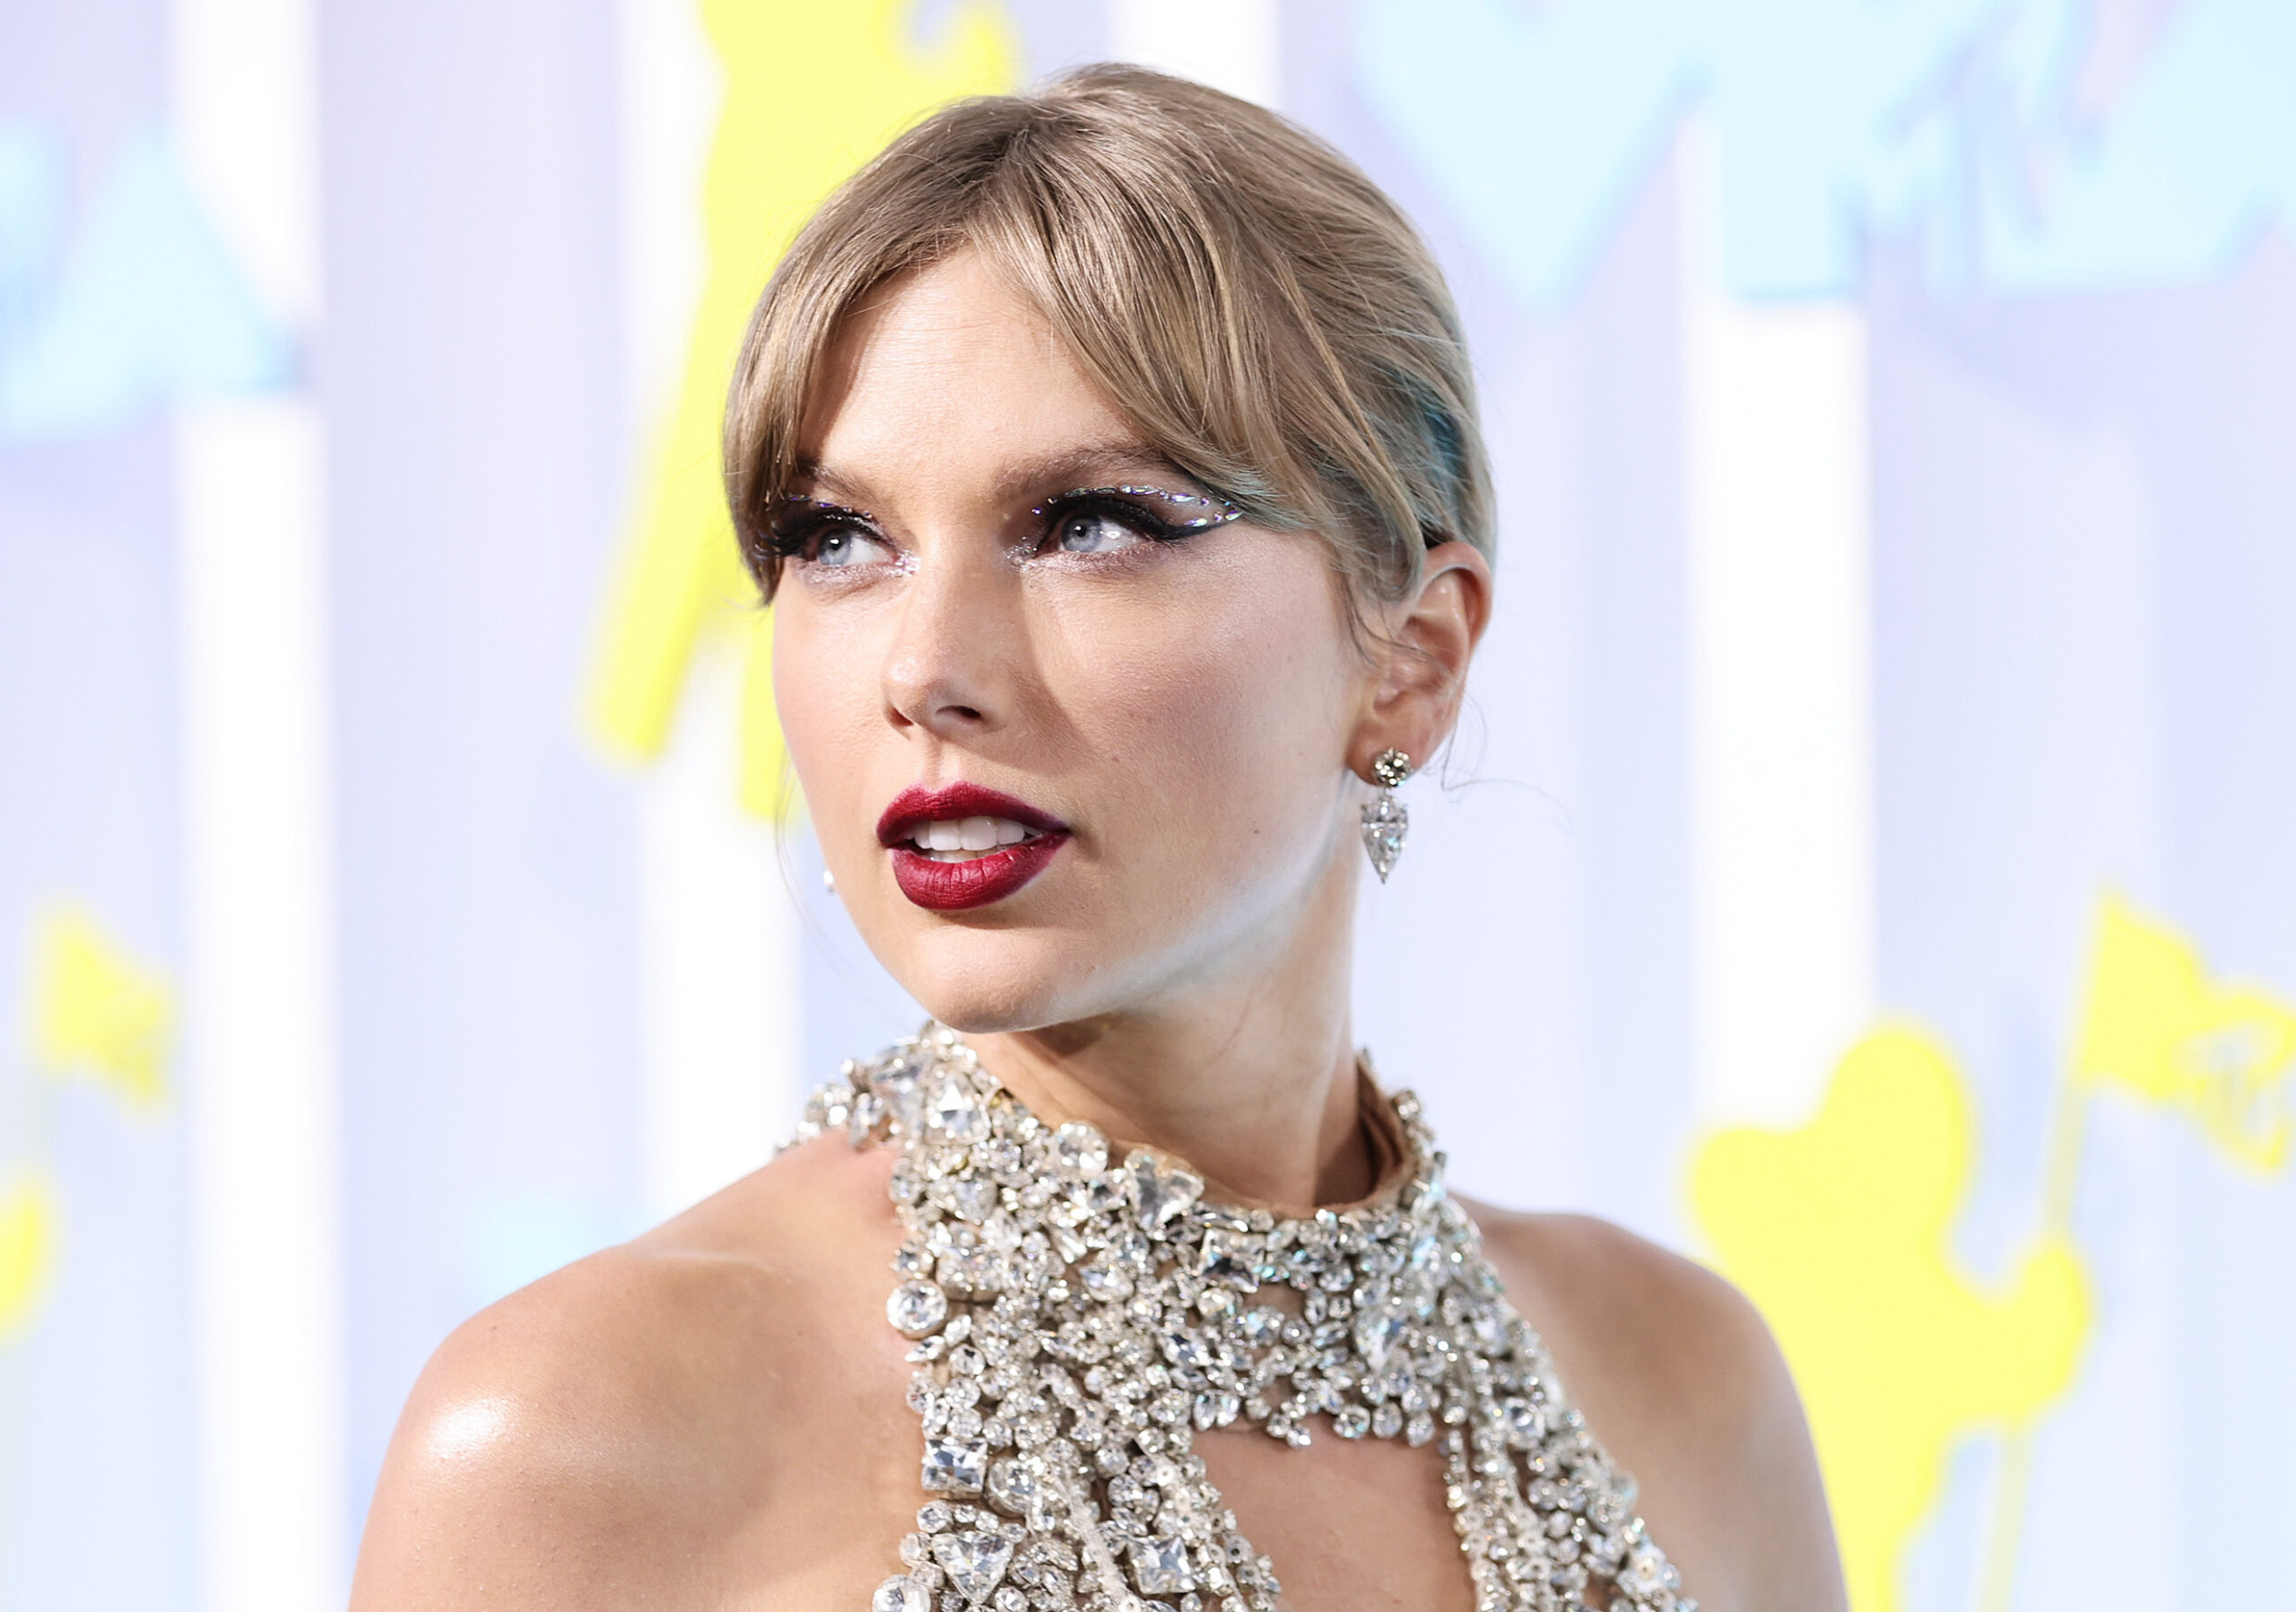 Taylor Swift’s publicist denies Joe Alwyn marriage rumors